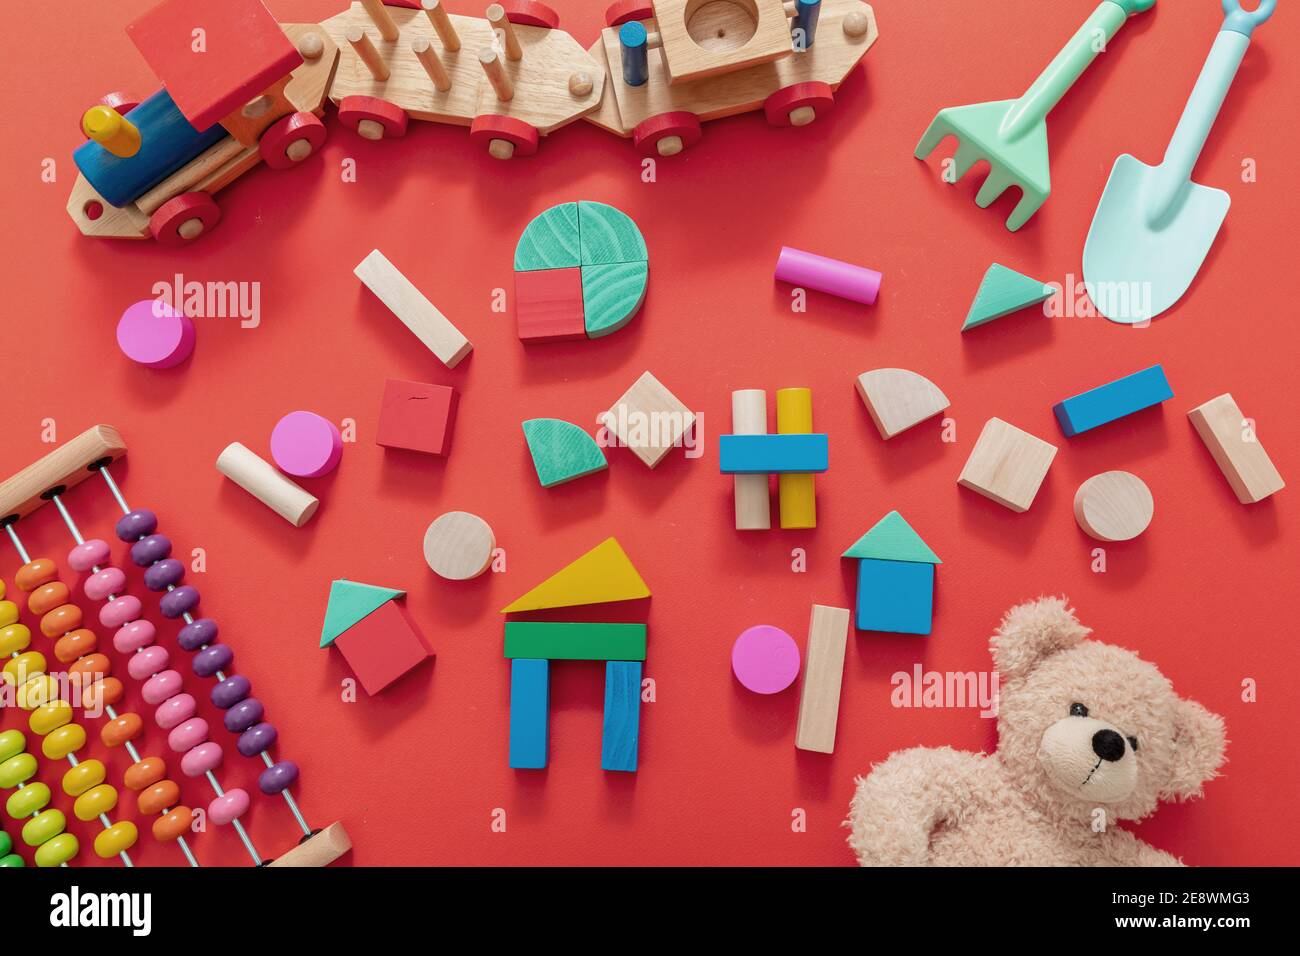 Jouets pour enfants, blocs de bois, teddy et abacus, jeu créatif pour enfants d'âge préscolaire. Arrière-plan de couleur rouge, vue de dessus. Banque D'Images